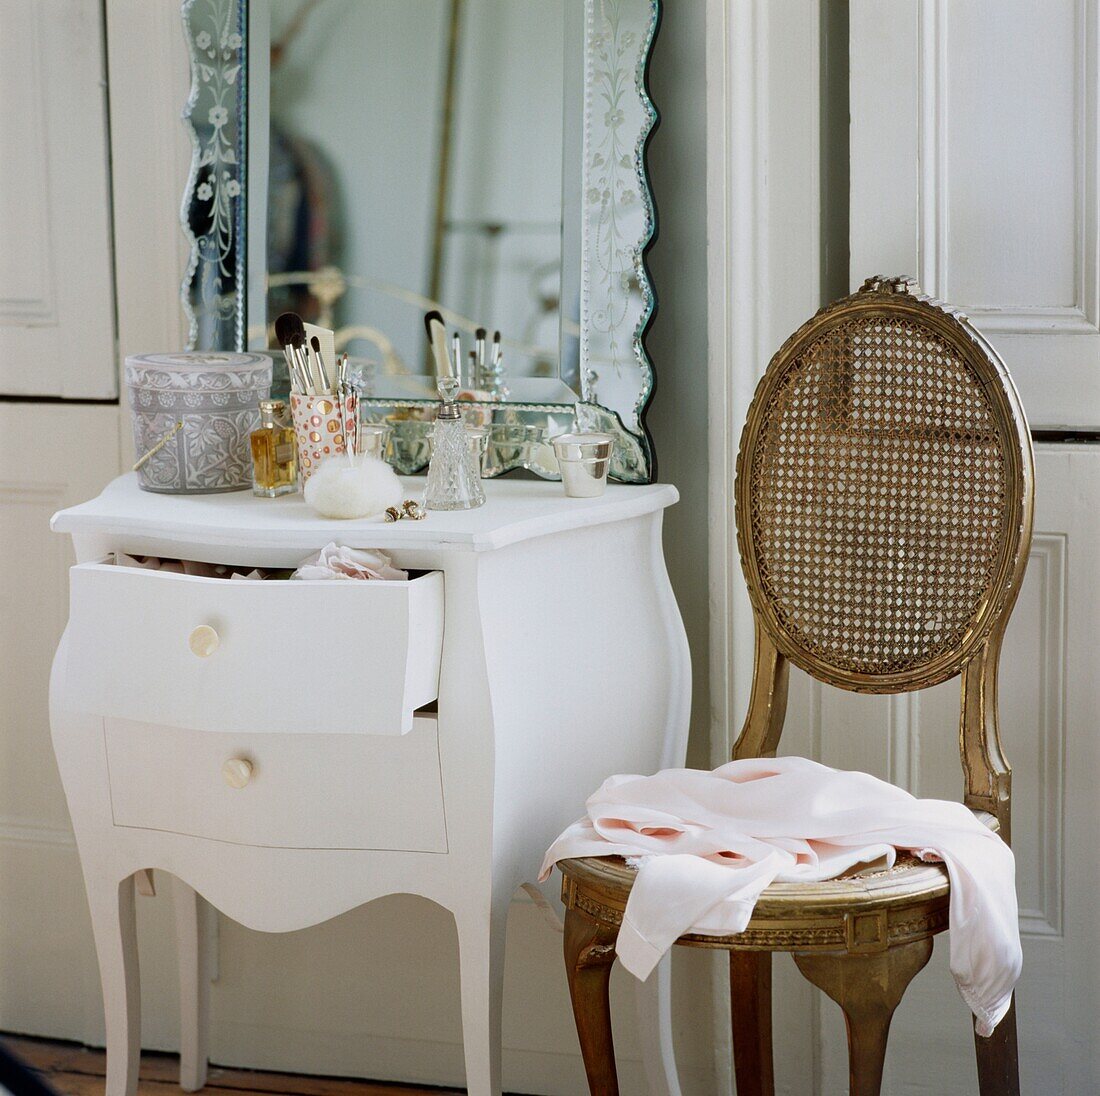 Rosa Bluse auf antikem Stuhl neben Schminktisch mit graviertem Spiegel und offener Schublade